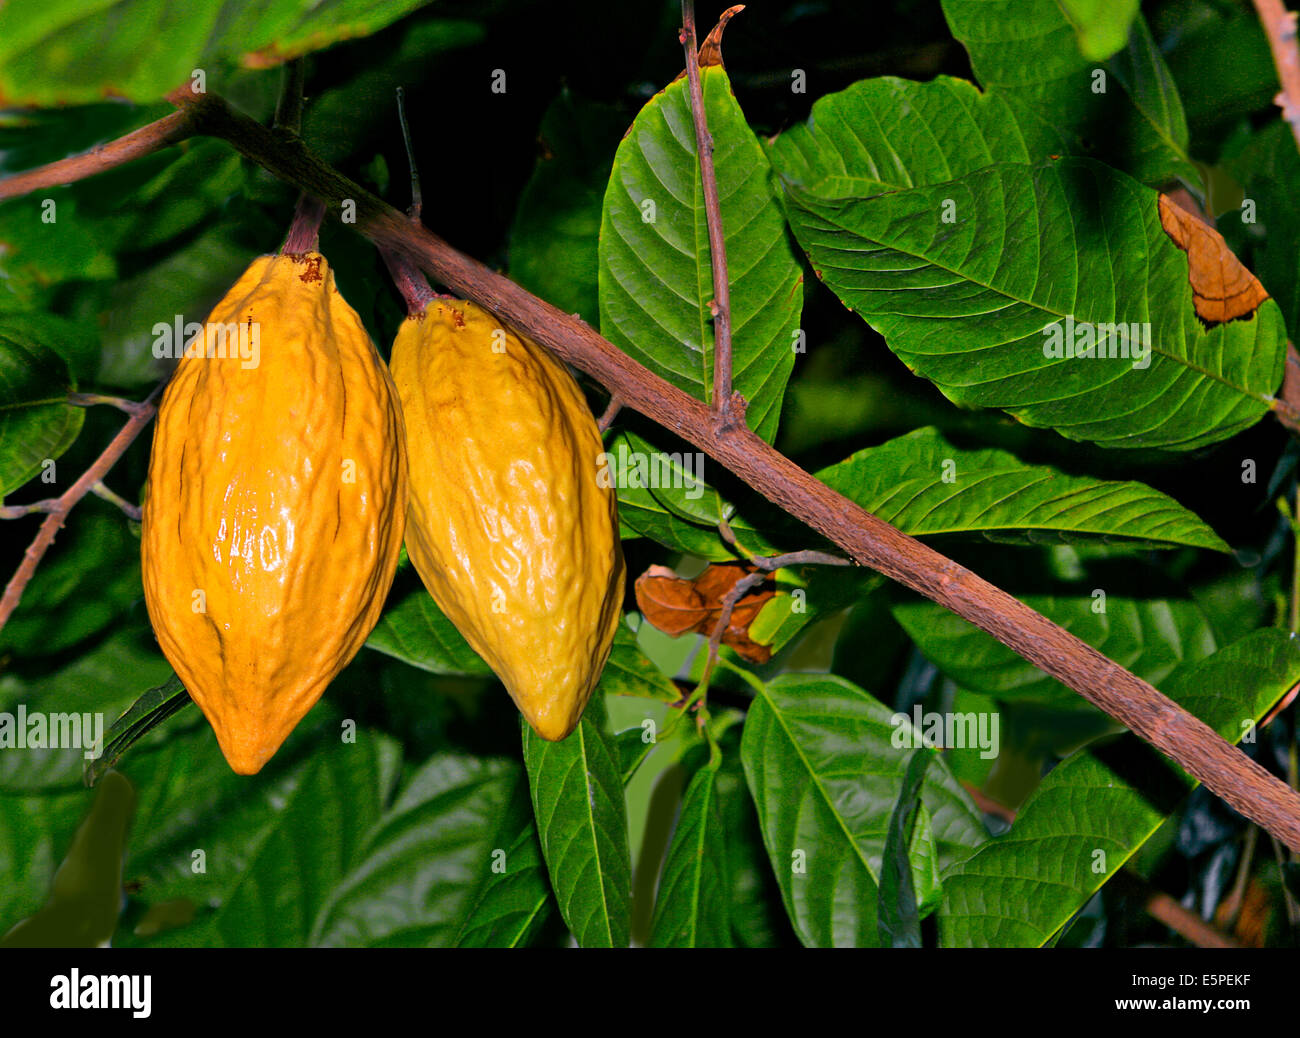 kakao-baum oder kakaobaum (theobroma cacao) mit gelben früchten